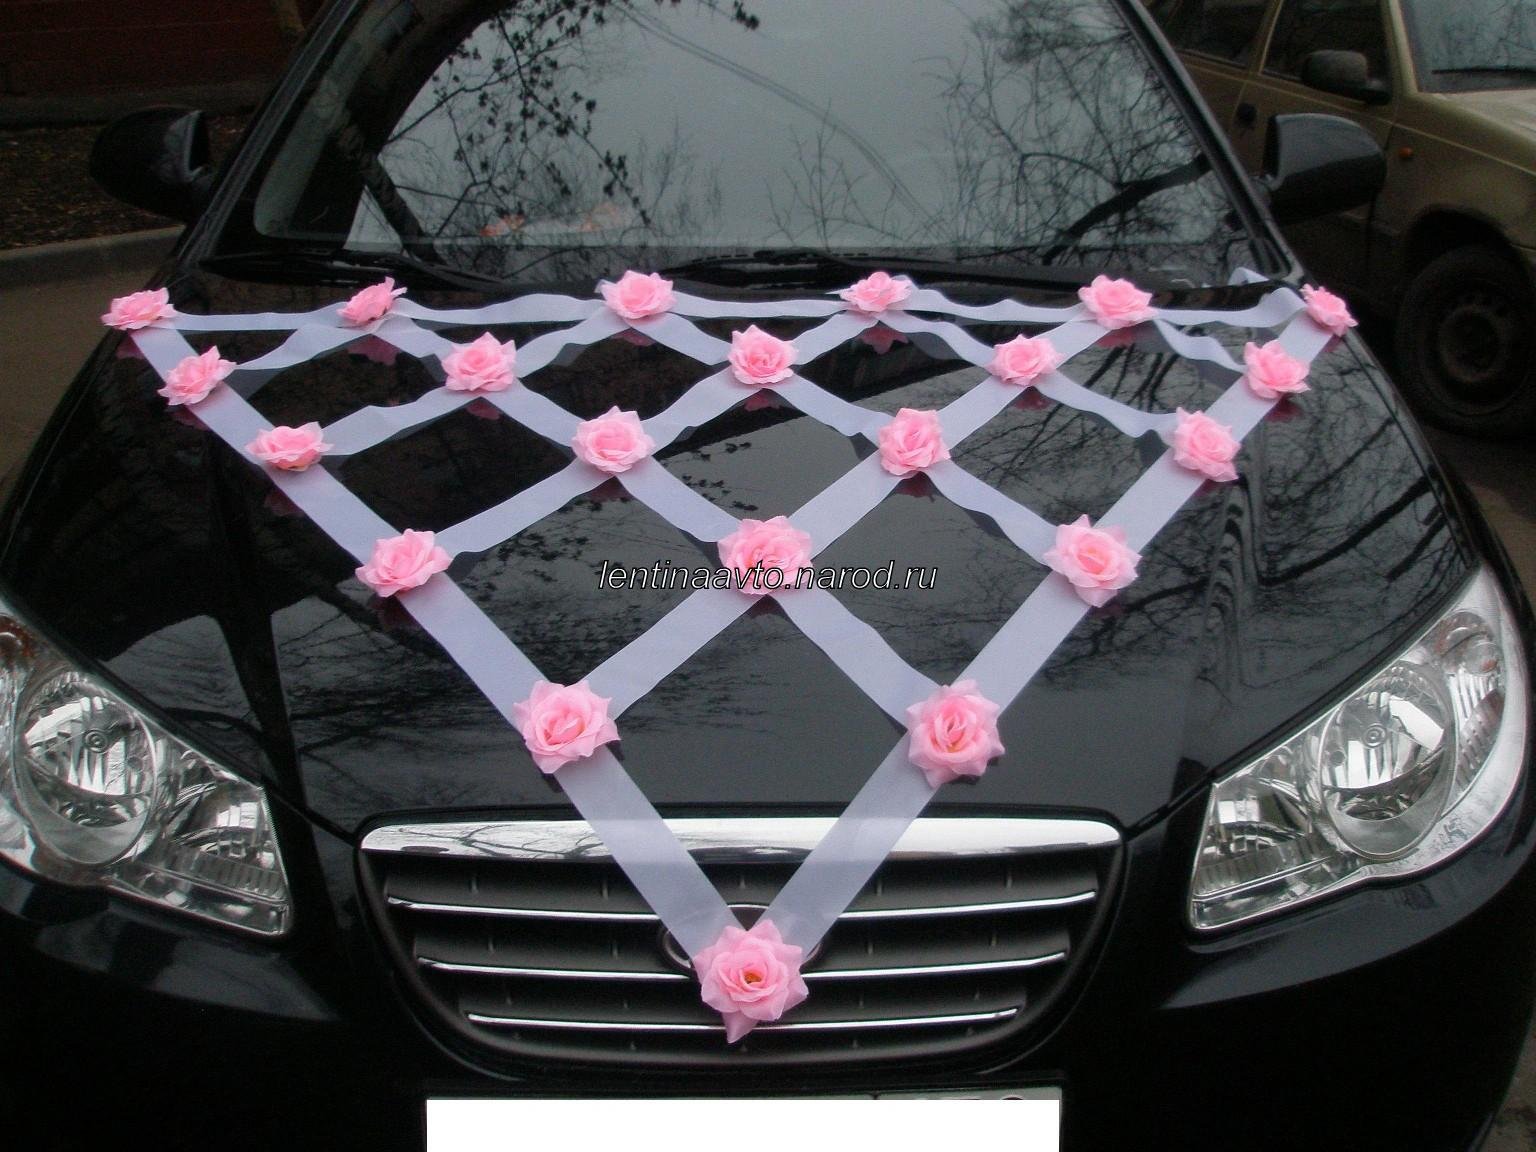 Свадебные ленты на авто, украшения цветы для автомобиля на свадьбу, лента на капот